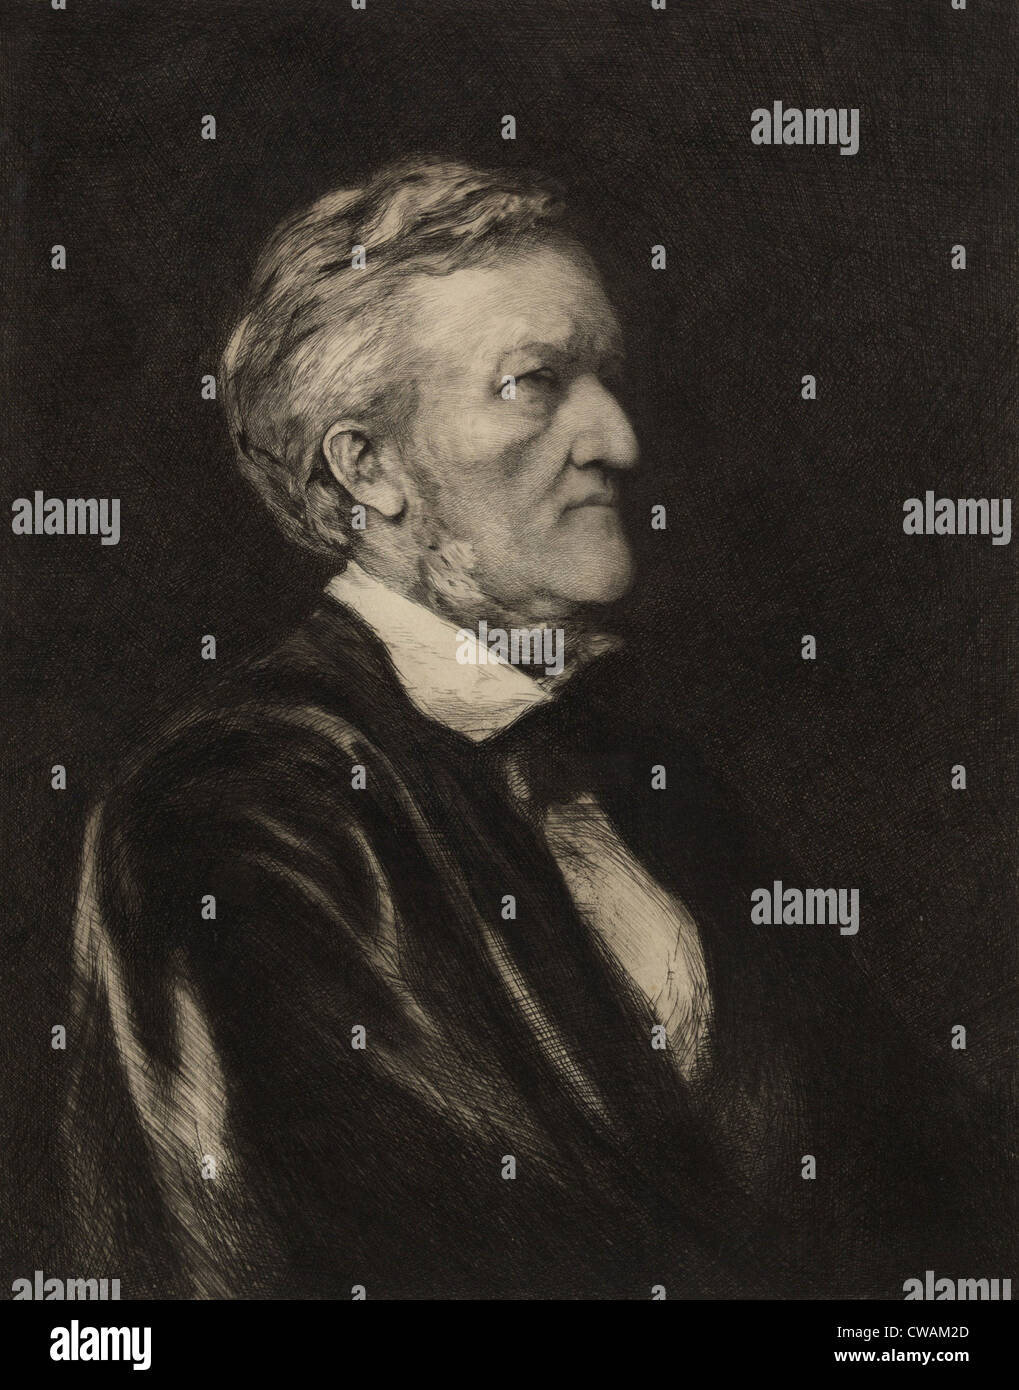 Richard Wagner (1913-1883) German composer. Portrait etching by German born artist Hubert von Herkomer (1849-1914) Stock Photo